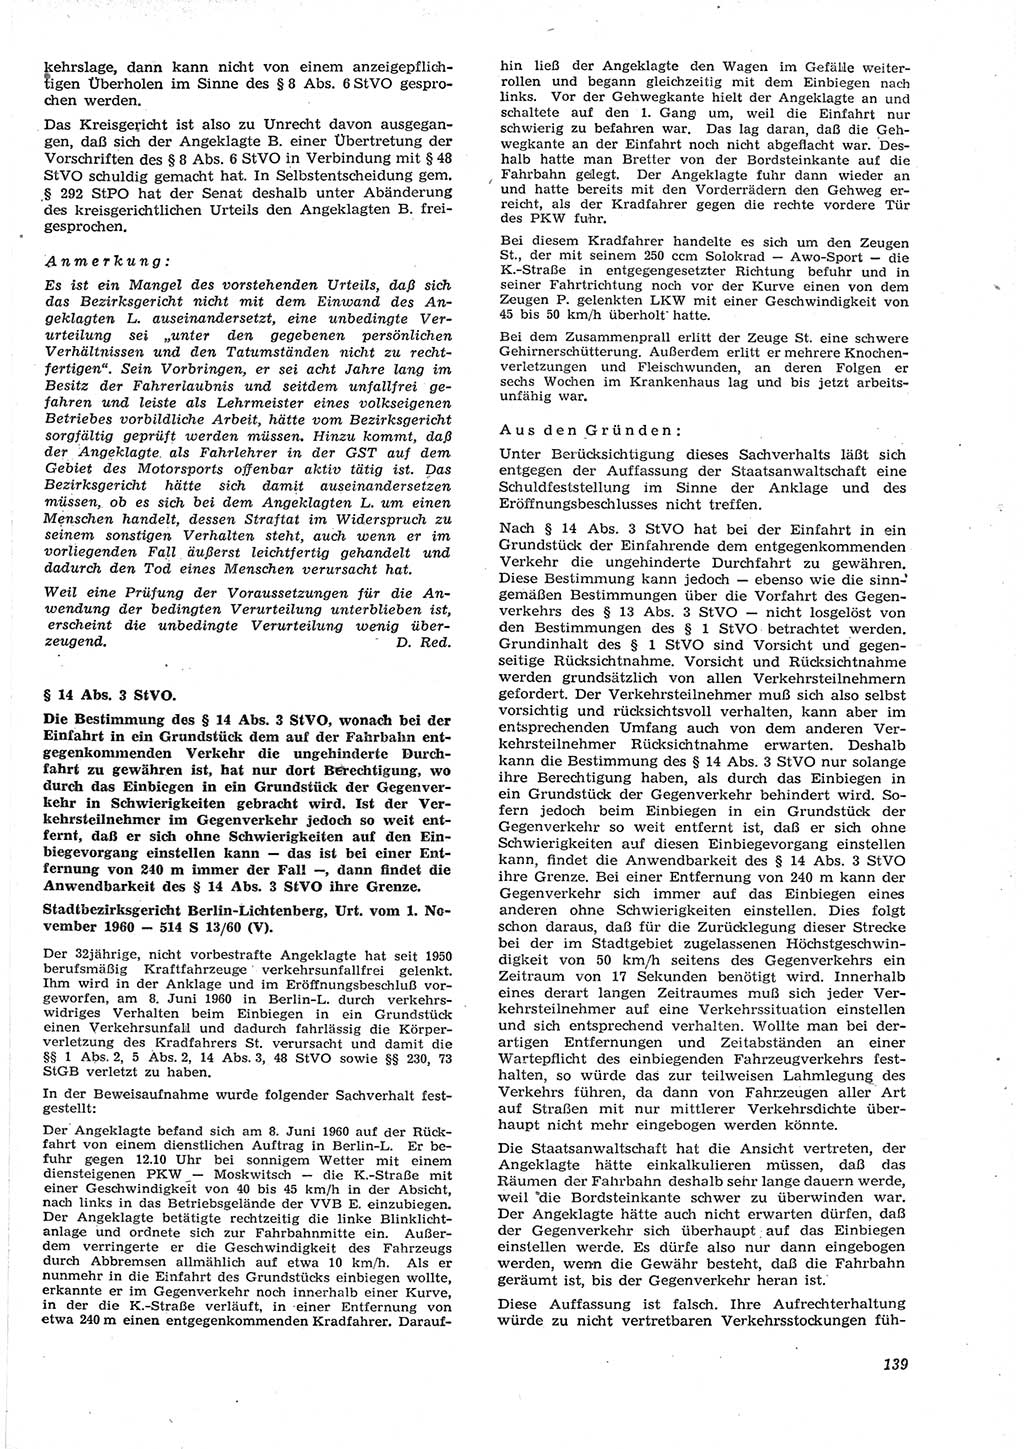 Neue Justiz (NJ), Zeitschrift für Recht und Rechtswissenschaft [Deutsche Demokratische Republik (DDR)], 15. Jahrgang 1961, Seite 139 (NJ DDR 1961, S. 139)